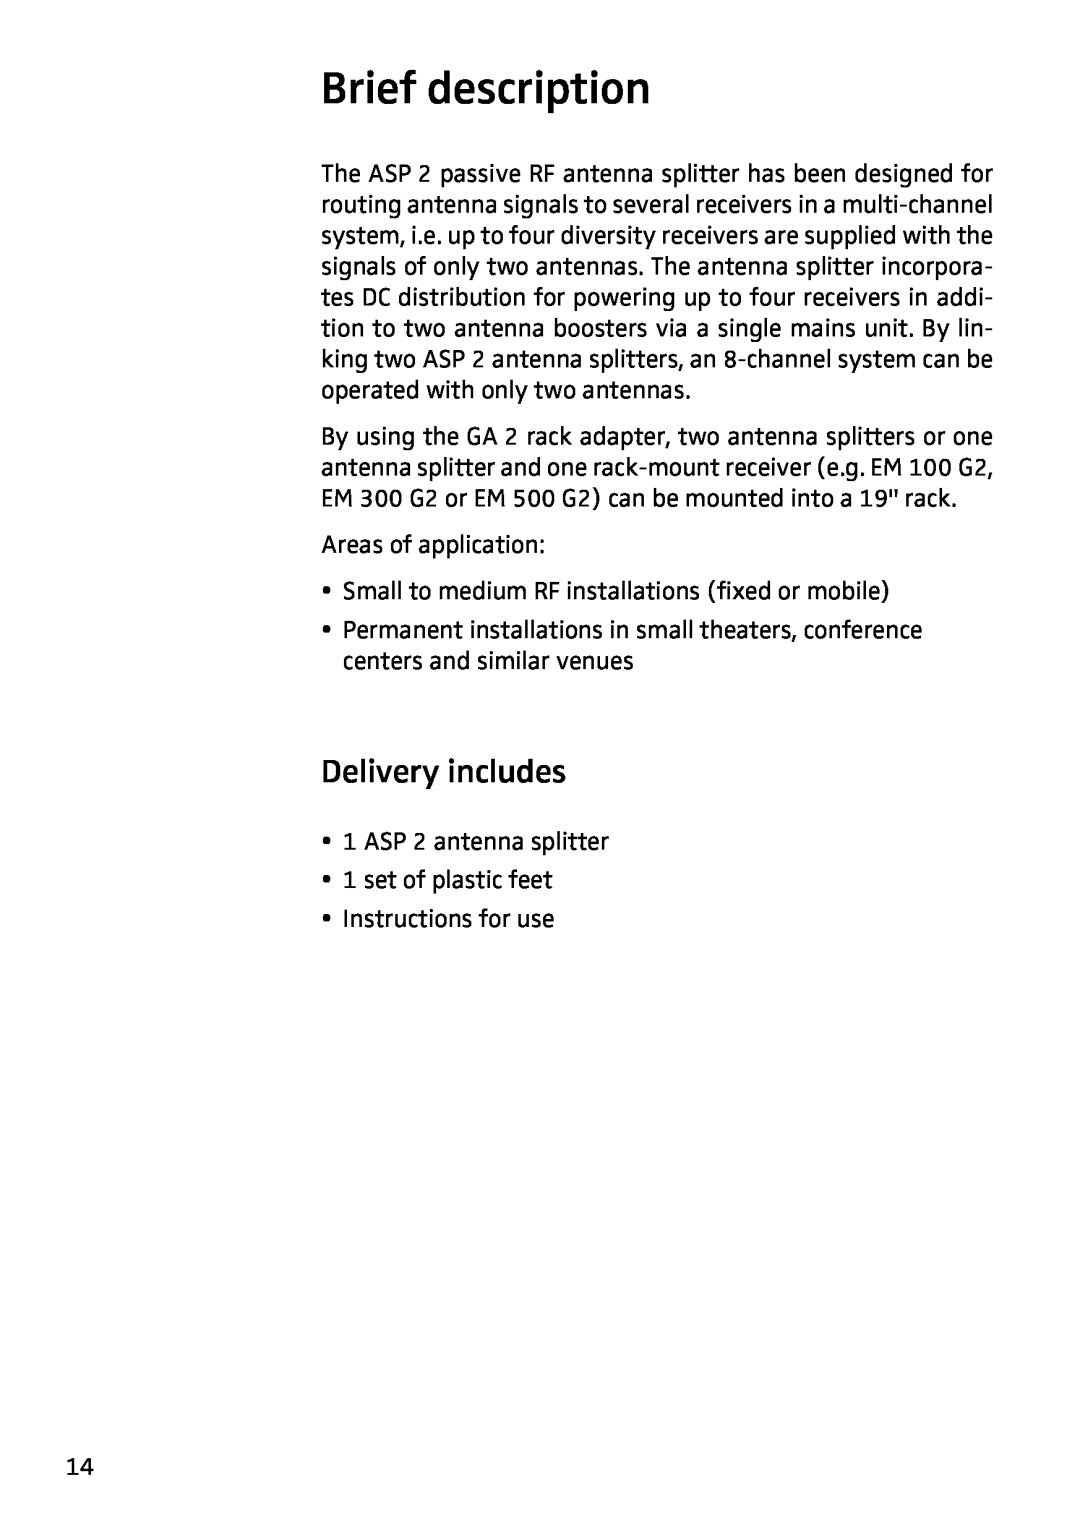 Sennheiser ASP 2 manual Brief description, Delivery includes 